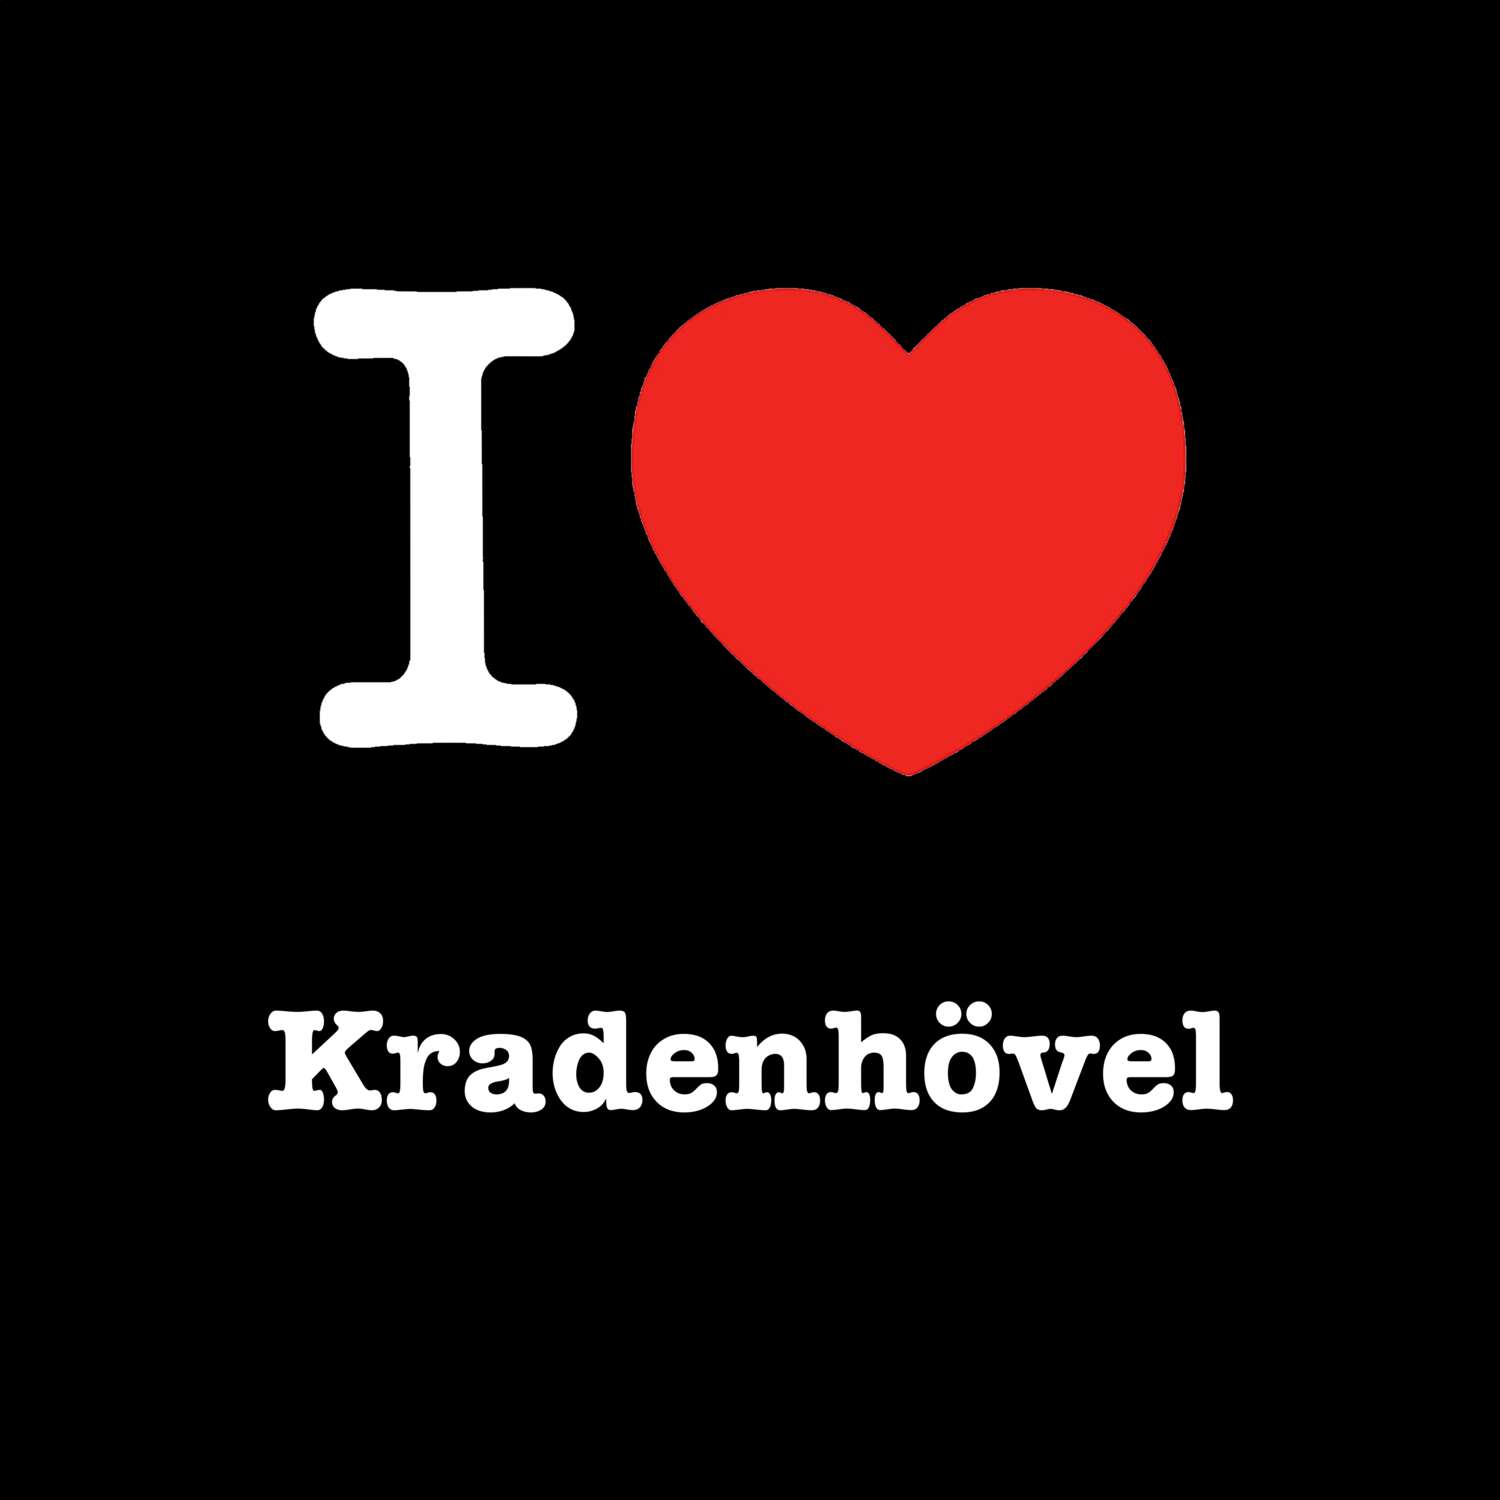 Kradenhövel T-Shirt »I love«